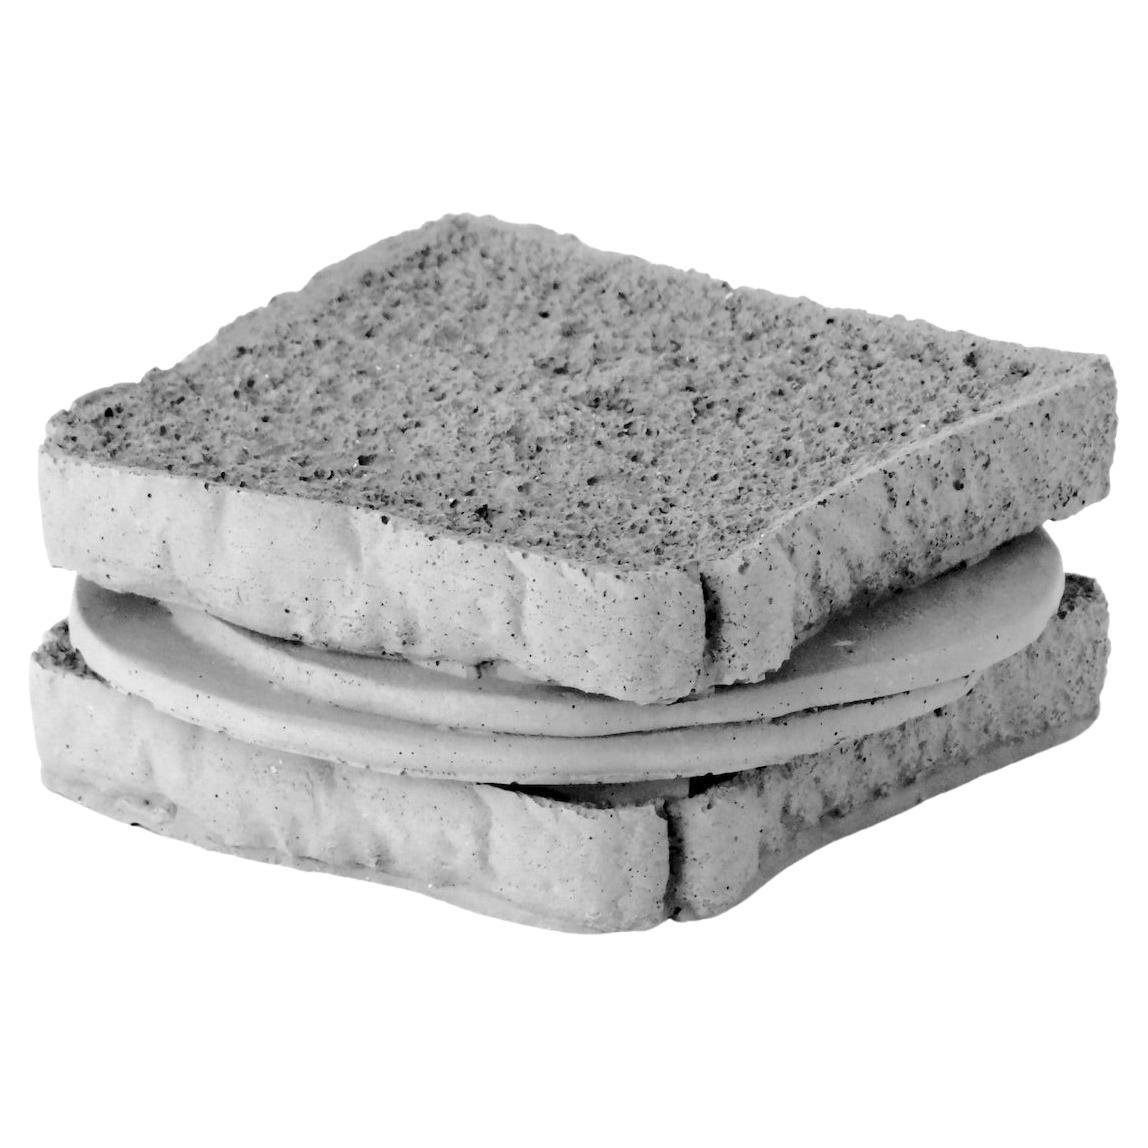 Concrete Baloney Sandwich For Sale